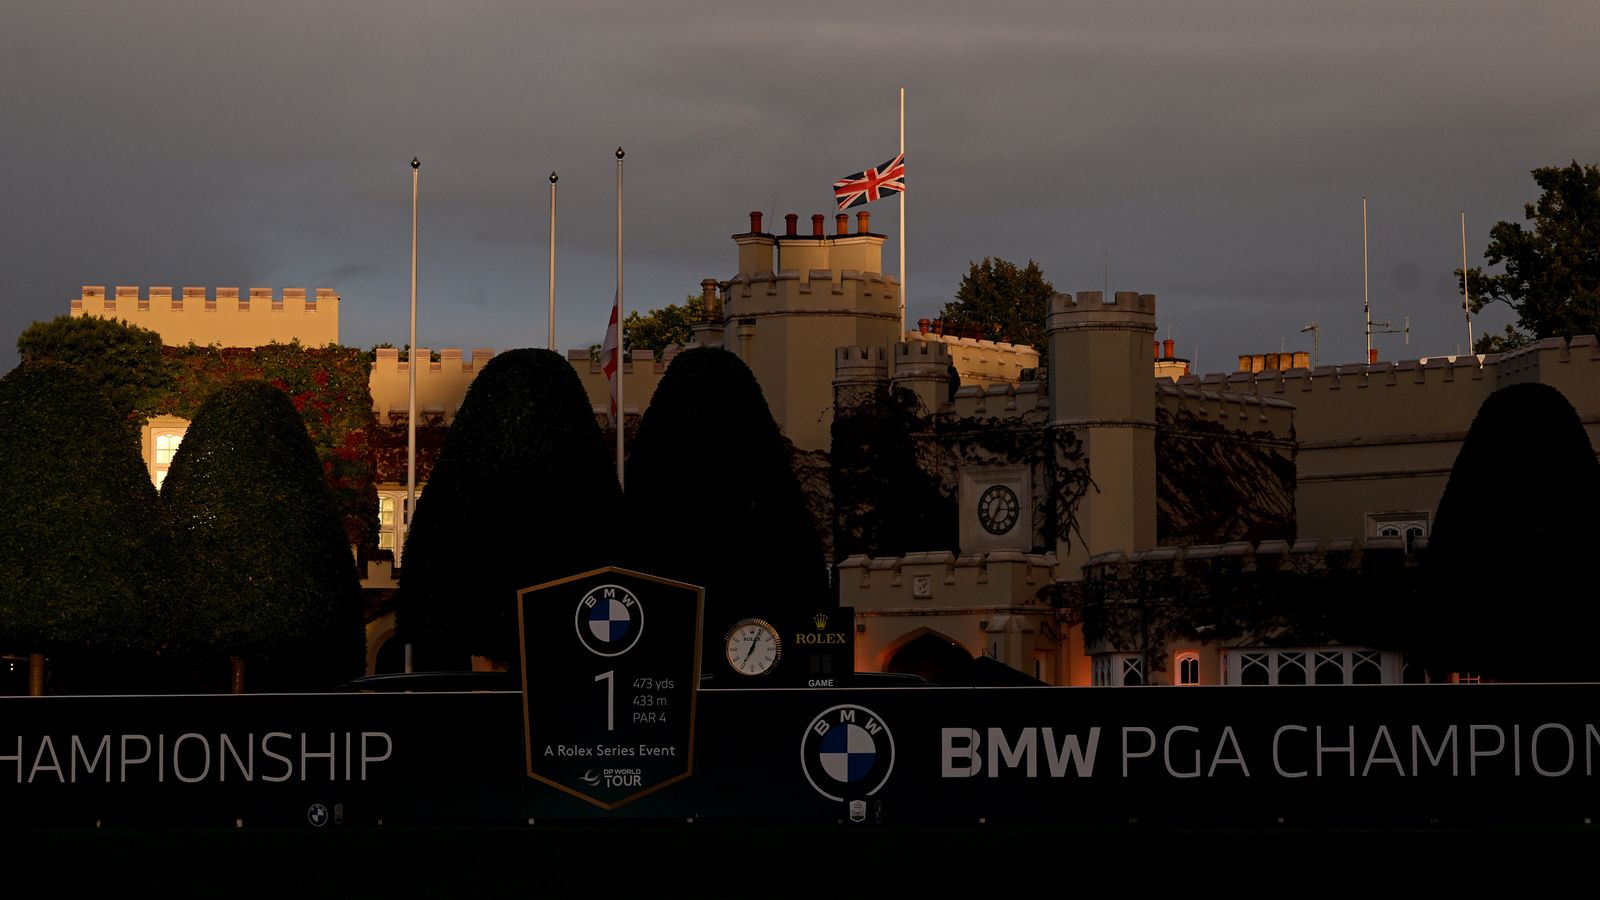 Campeonato BMW PGA: el torneo se reanuda después de la muerte de la Reina